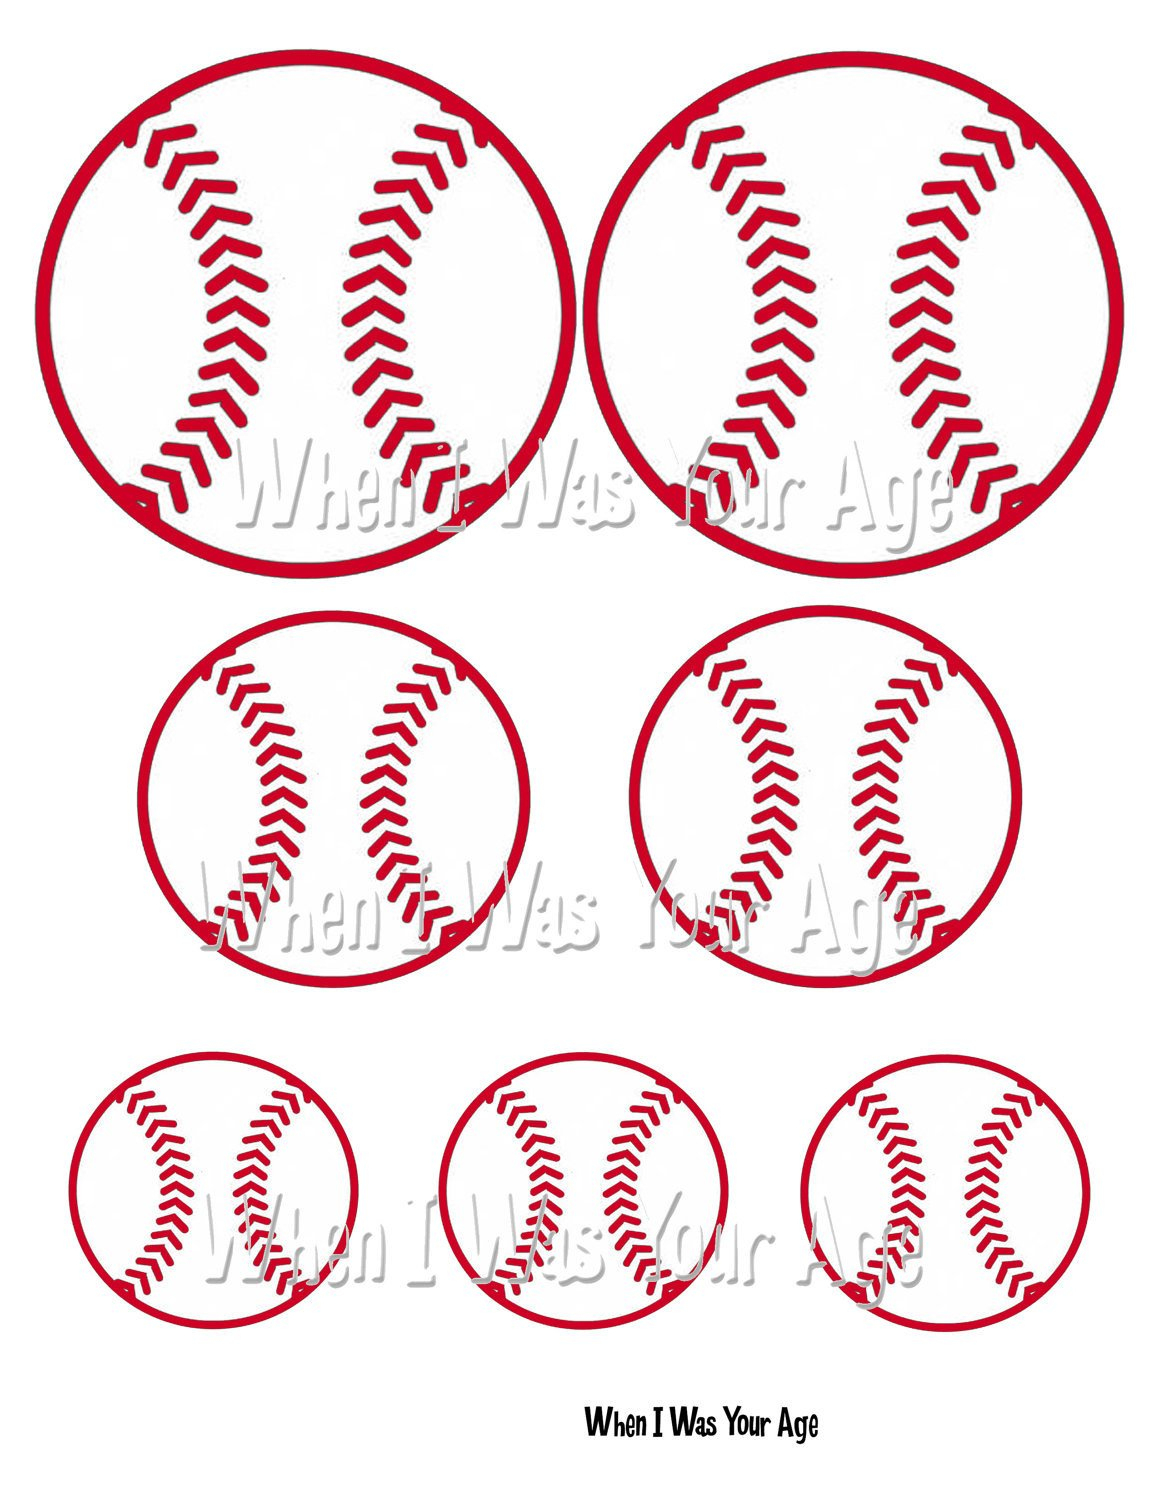 Free Printable Baseball Favor Tag - Free Printable Baseball Favor Tags